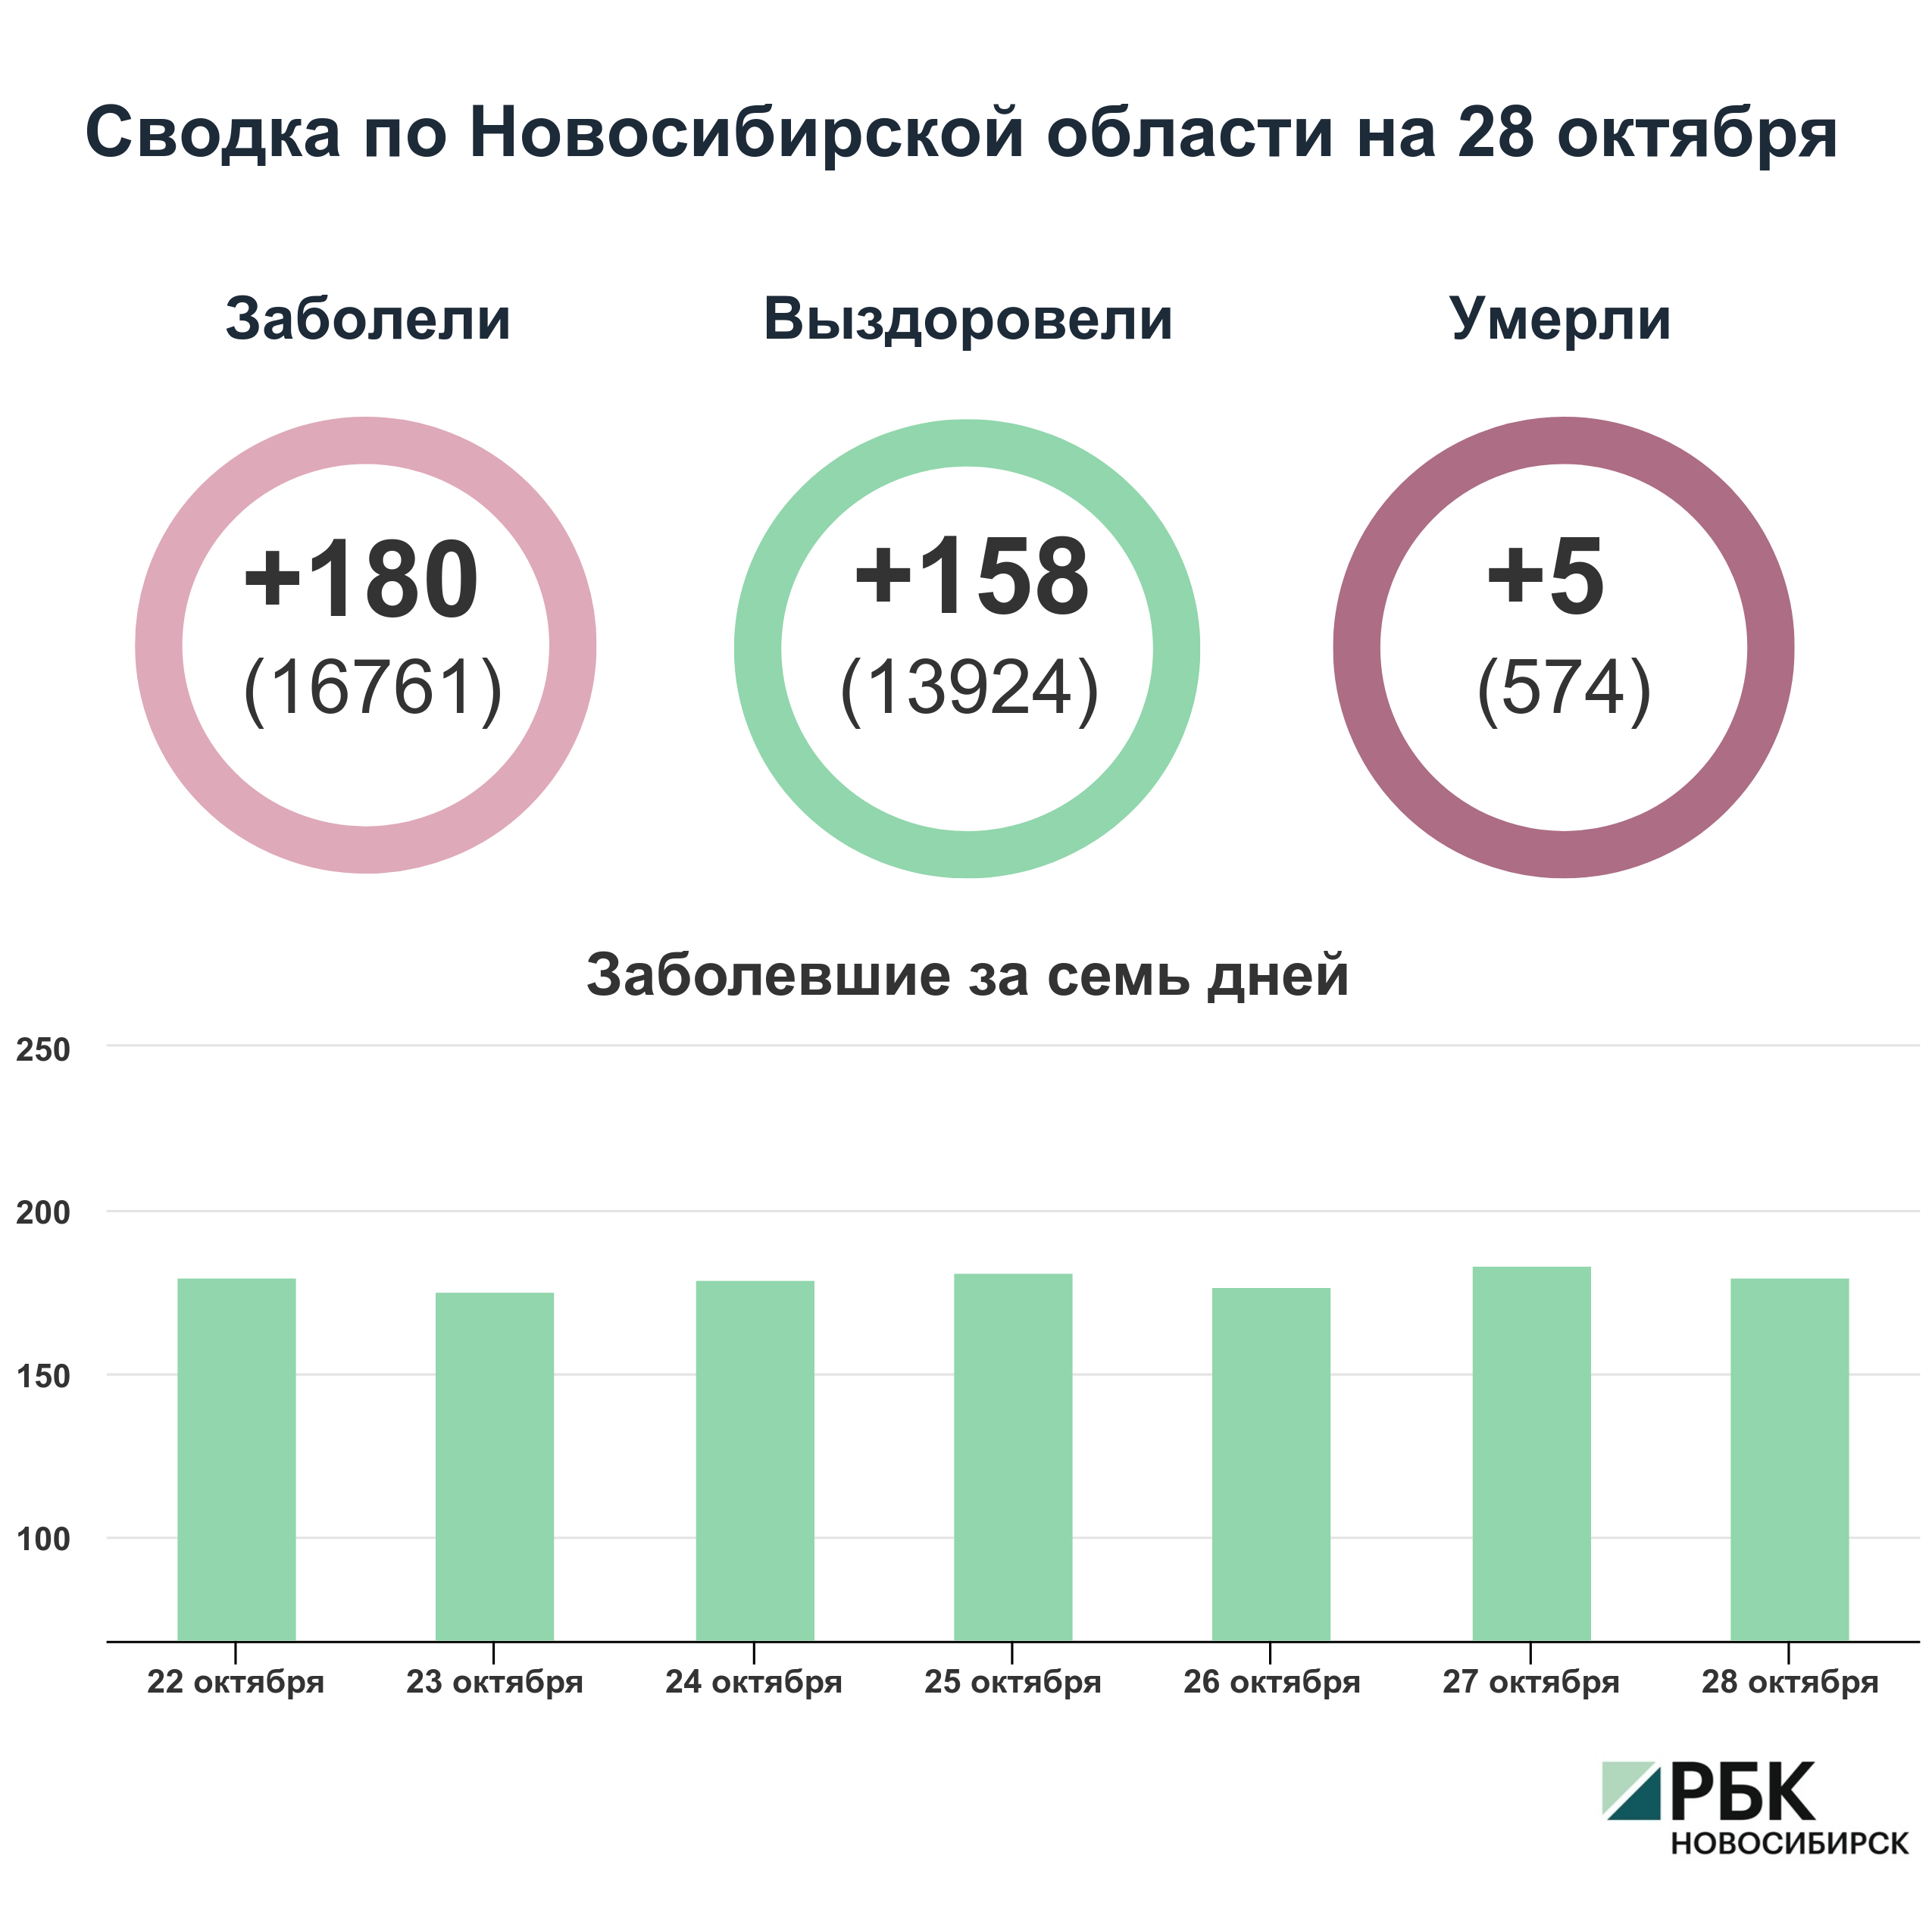 Коронавирус в Новосибирске: сводка на 28 октября